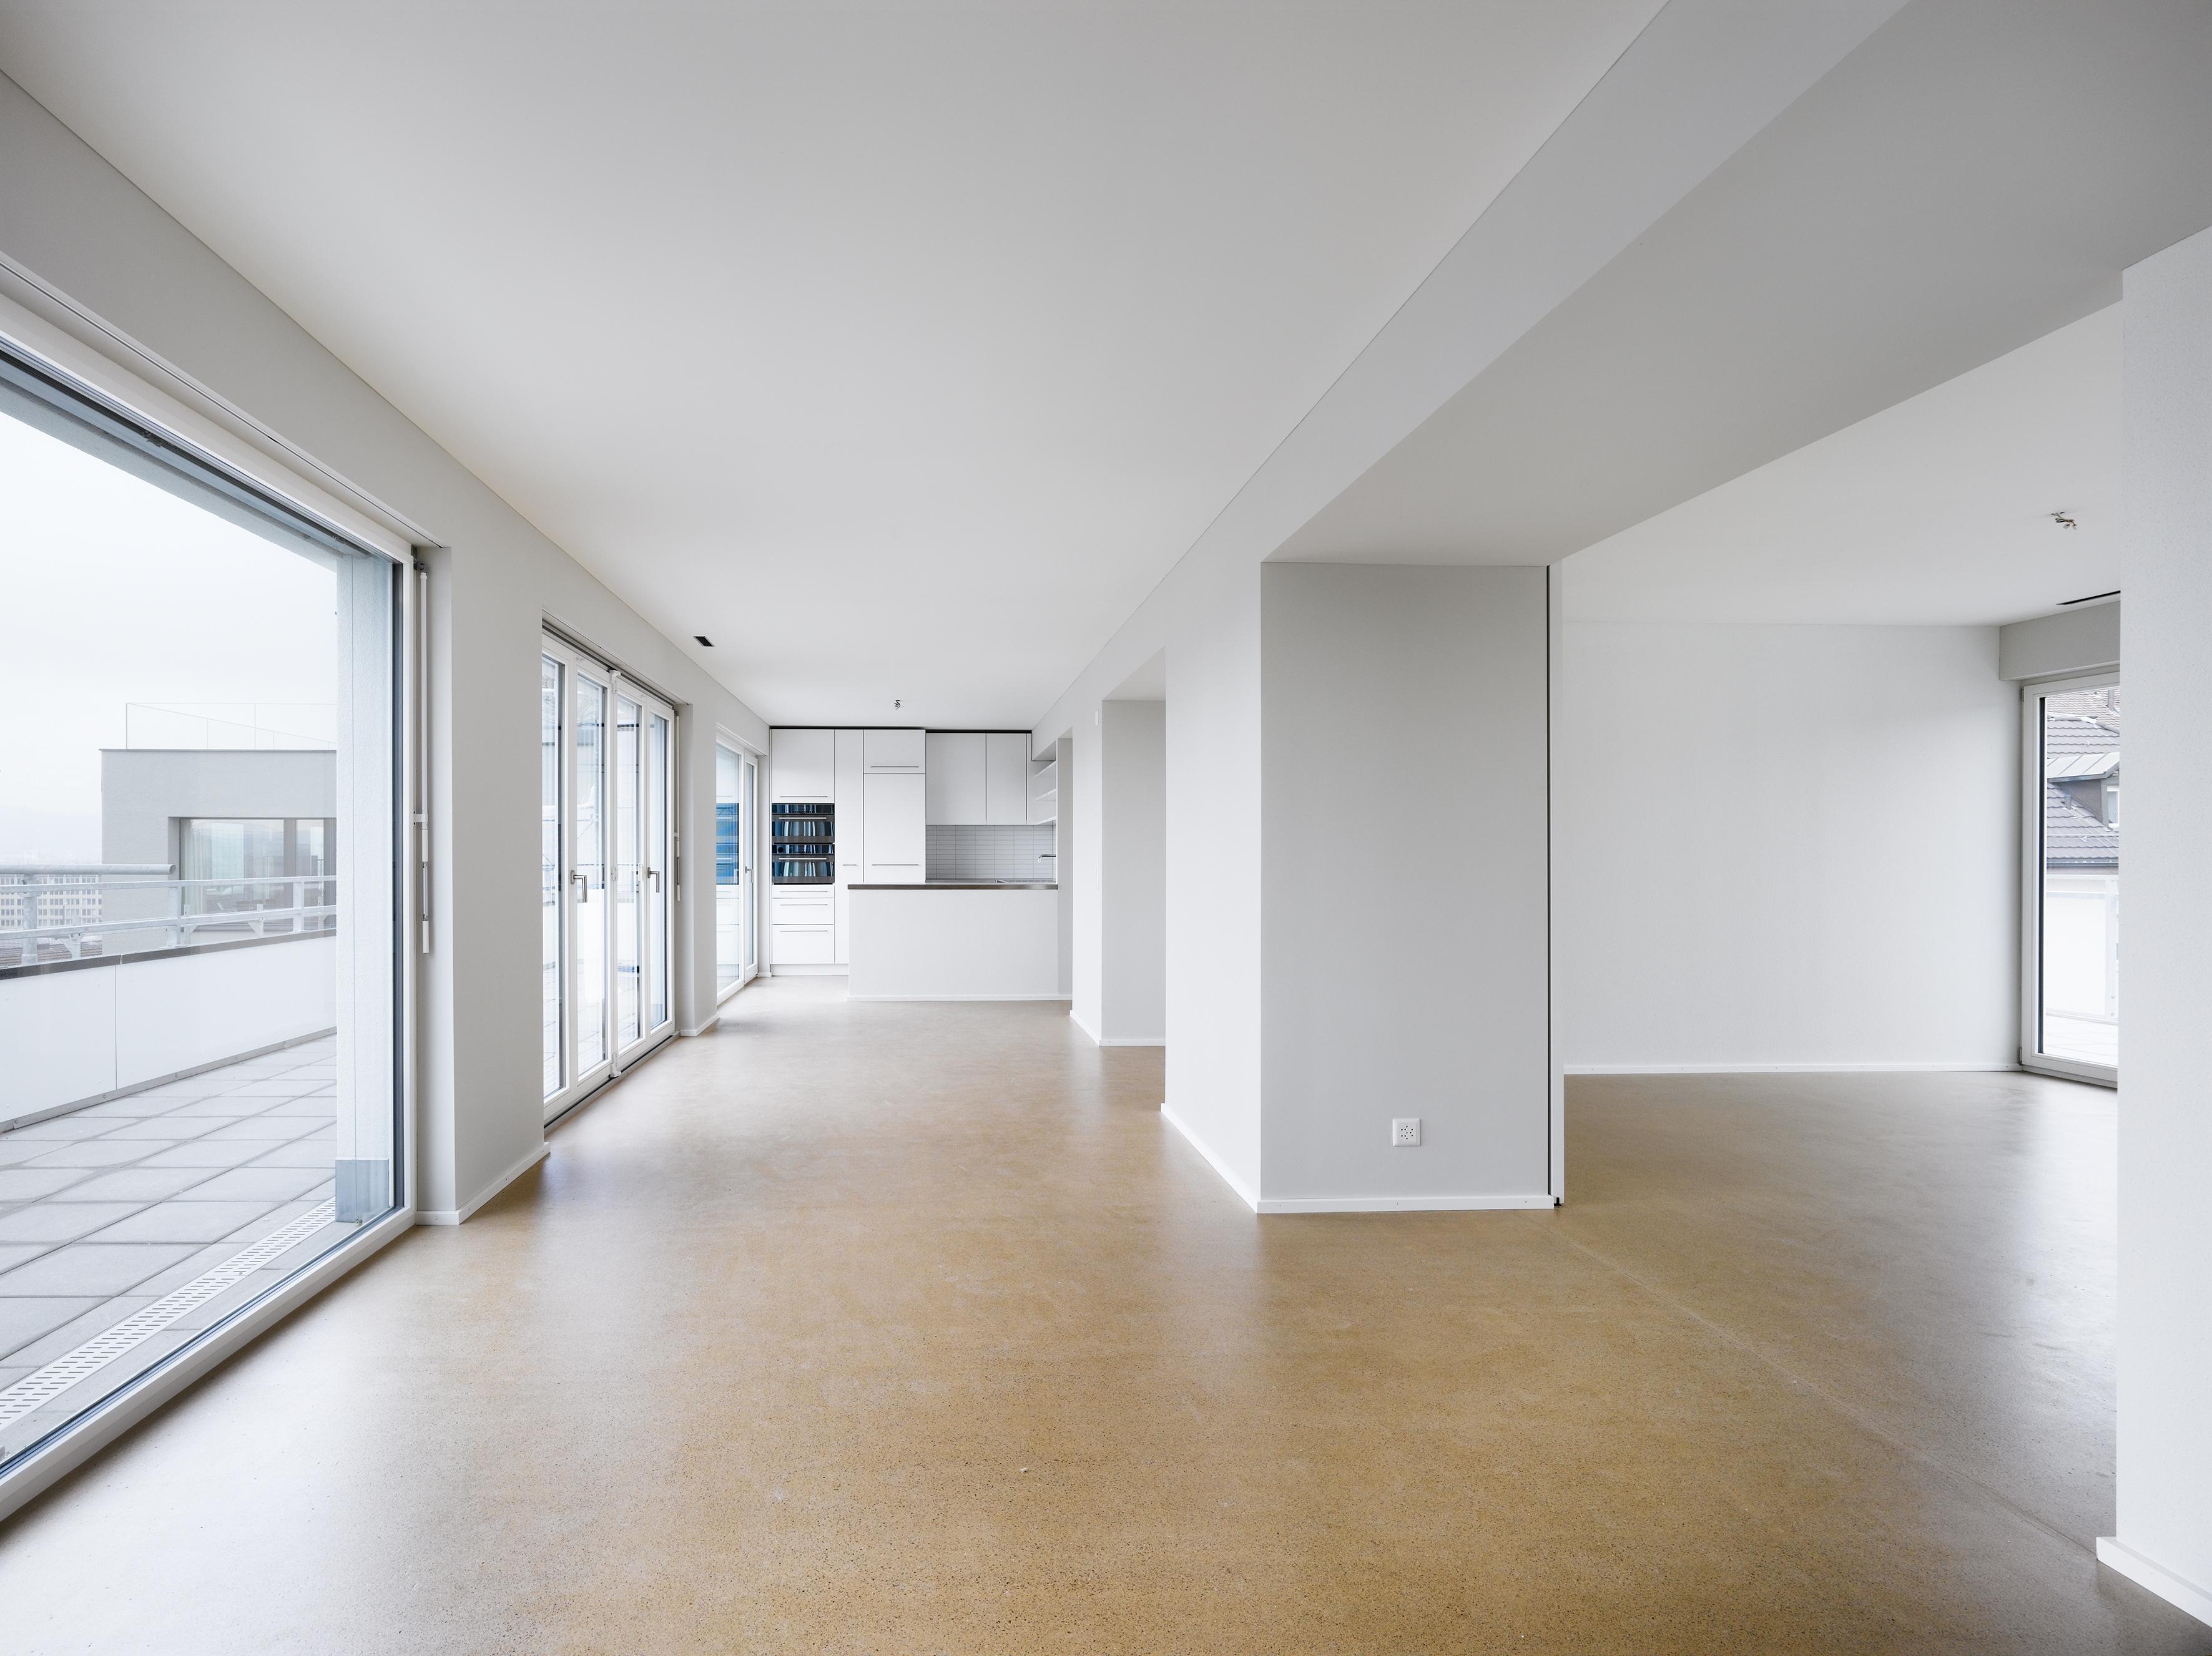 Architektur-Reportage Wipkingen MFH: Innenraum ist hell und geräumig mit grossen Fenstern